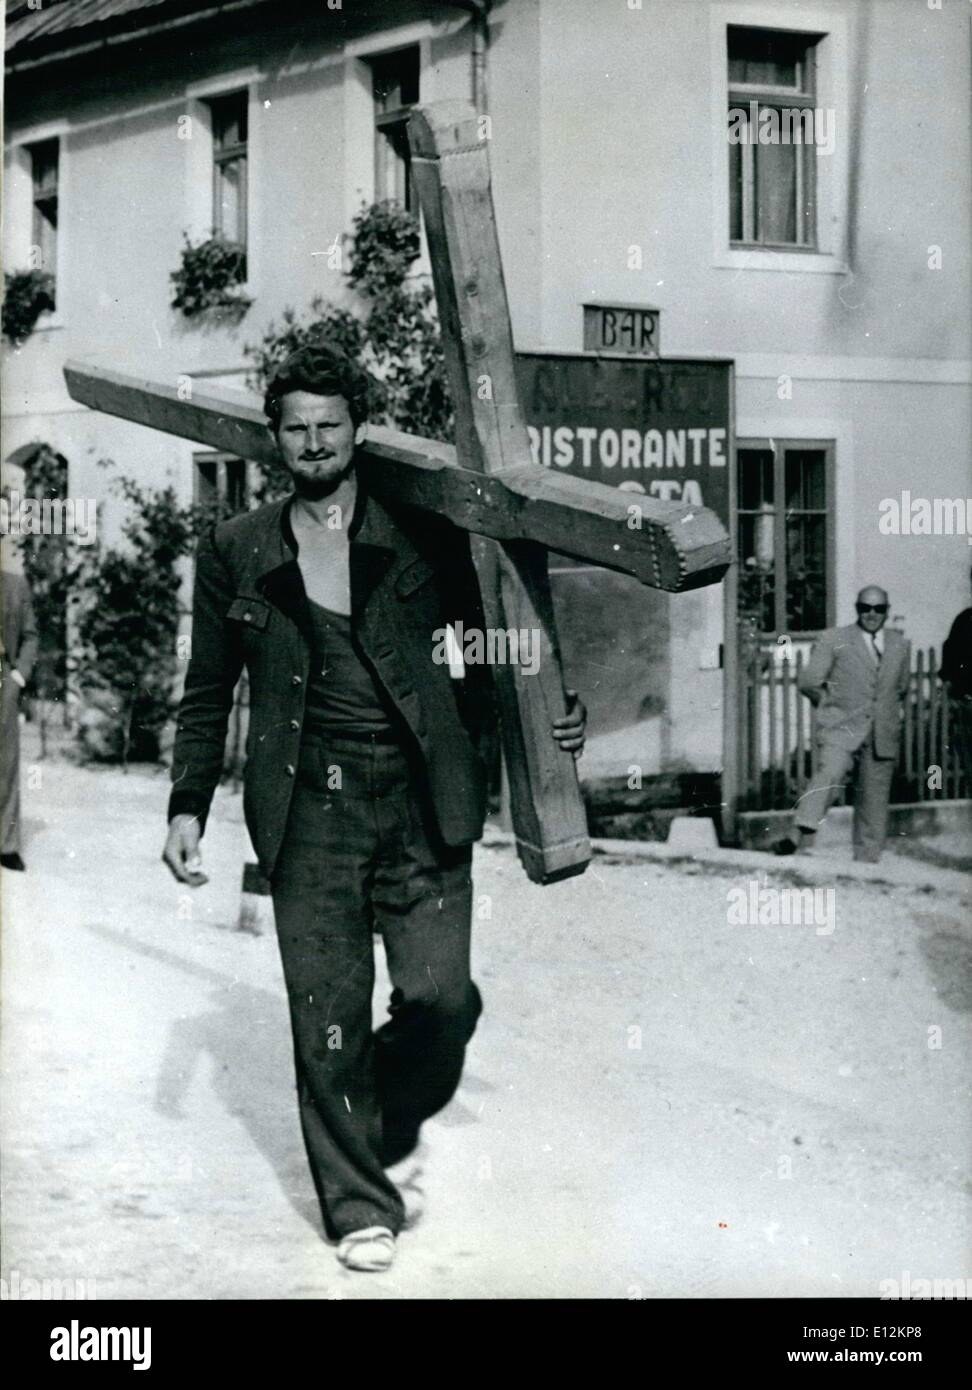 24 février 2012 - à pied jusqu'à Rome. Josef Wimmer de Leopoldsdorf/Autriche a l'intention de marcher cette auto-croix sculptée. Il ne veut pas parler de son vœu solennel. Notre photographe a été de rencontrer le pèlerin sur la rue à Friaul/nord de l'Italie. Photo Keystone Munich du 9 juin 1958 Banque D'Images